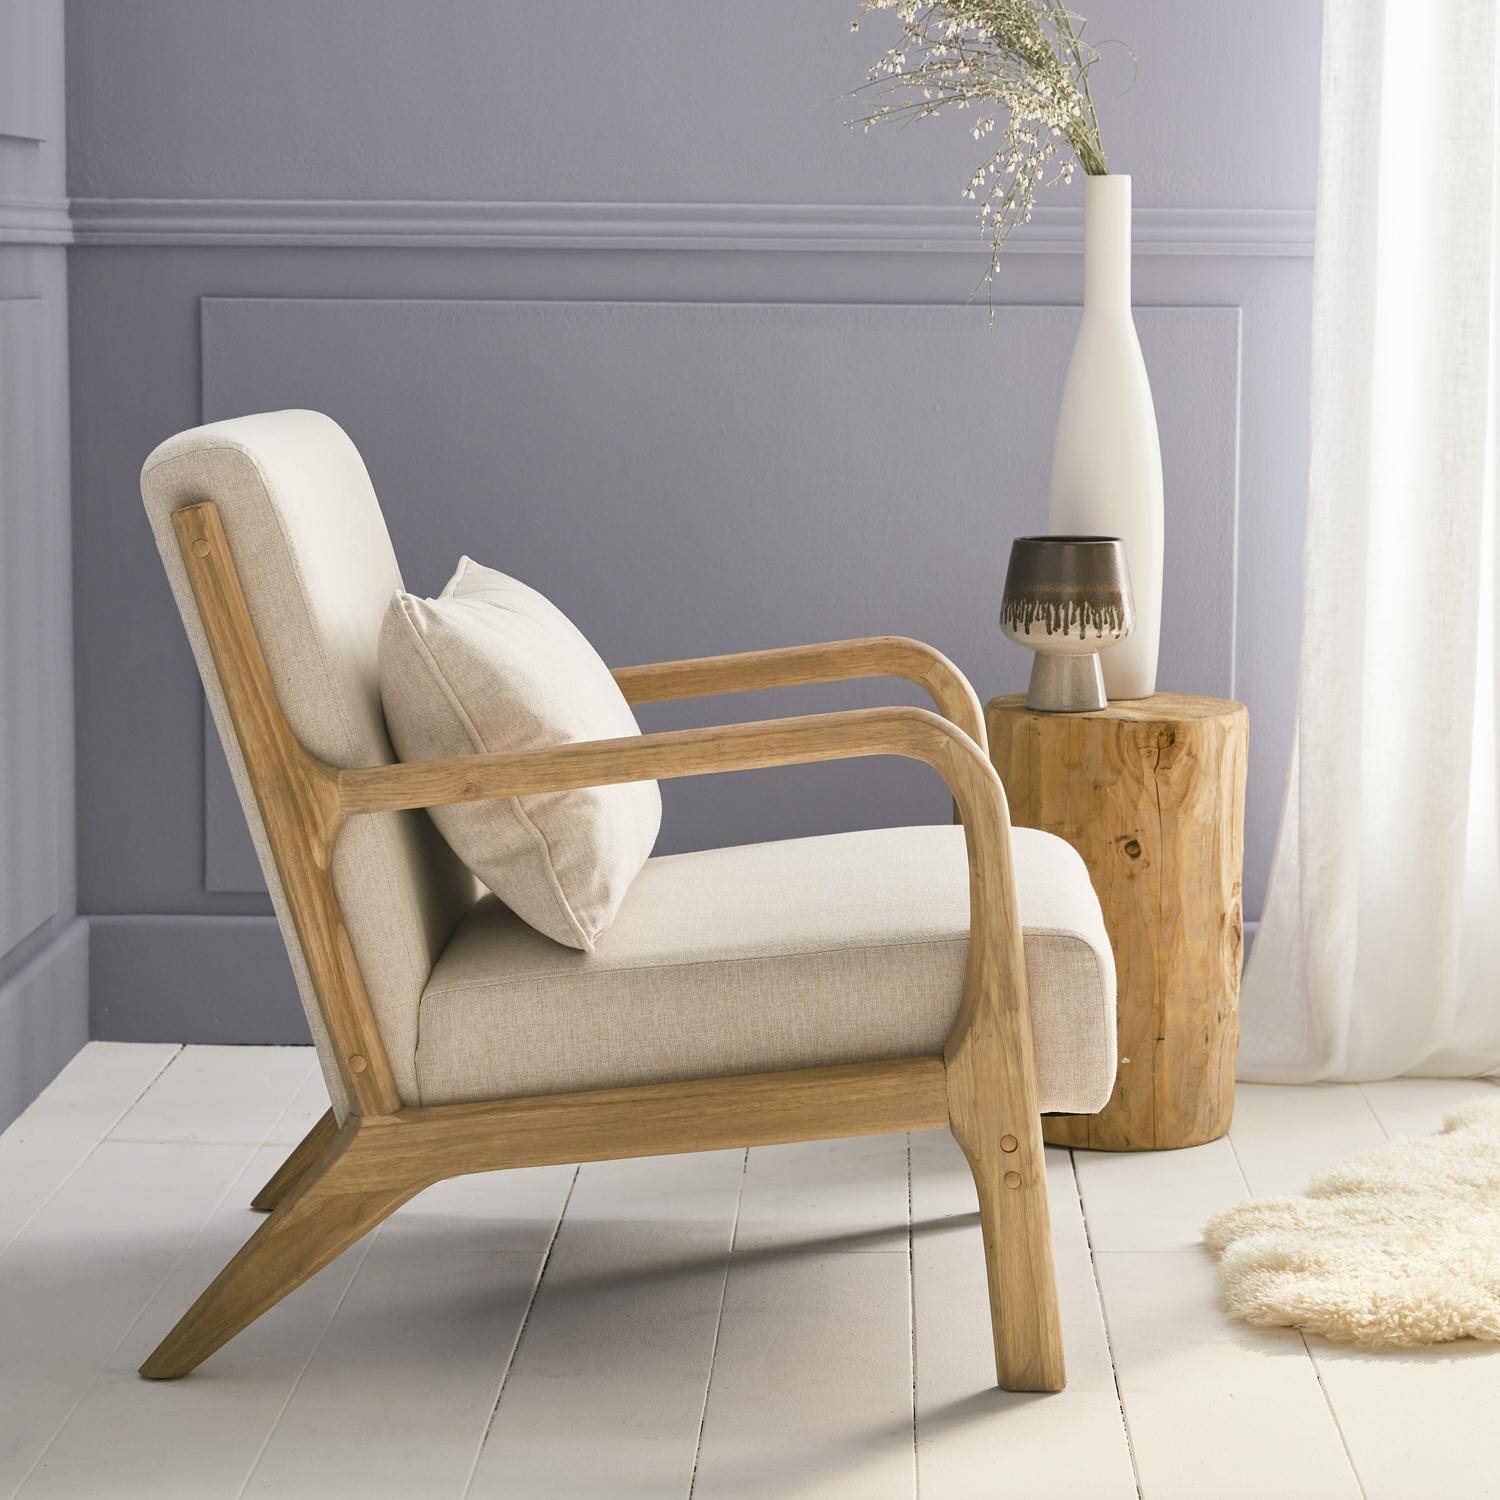 Poltrona de design em madeira e tecido, 1 assento reto fixo, pernas em bússola escandinavas, estrutura em madeira maciça, assento bege confortável Photo2